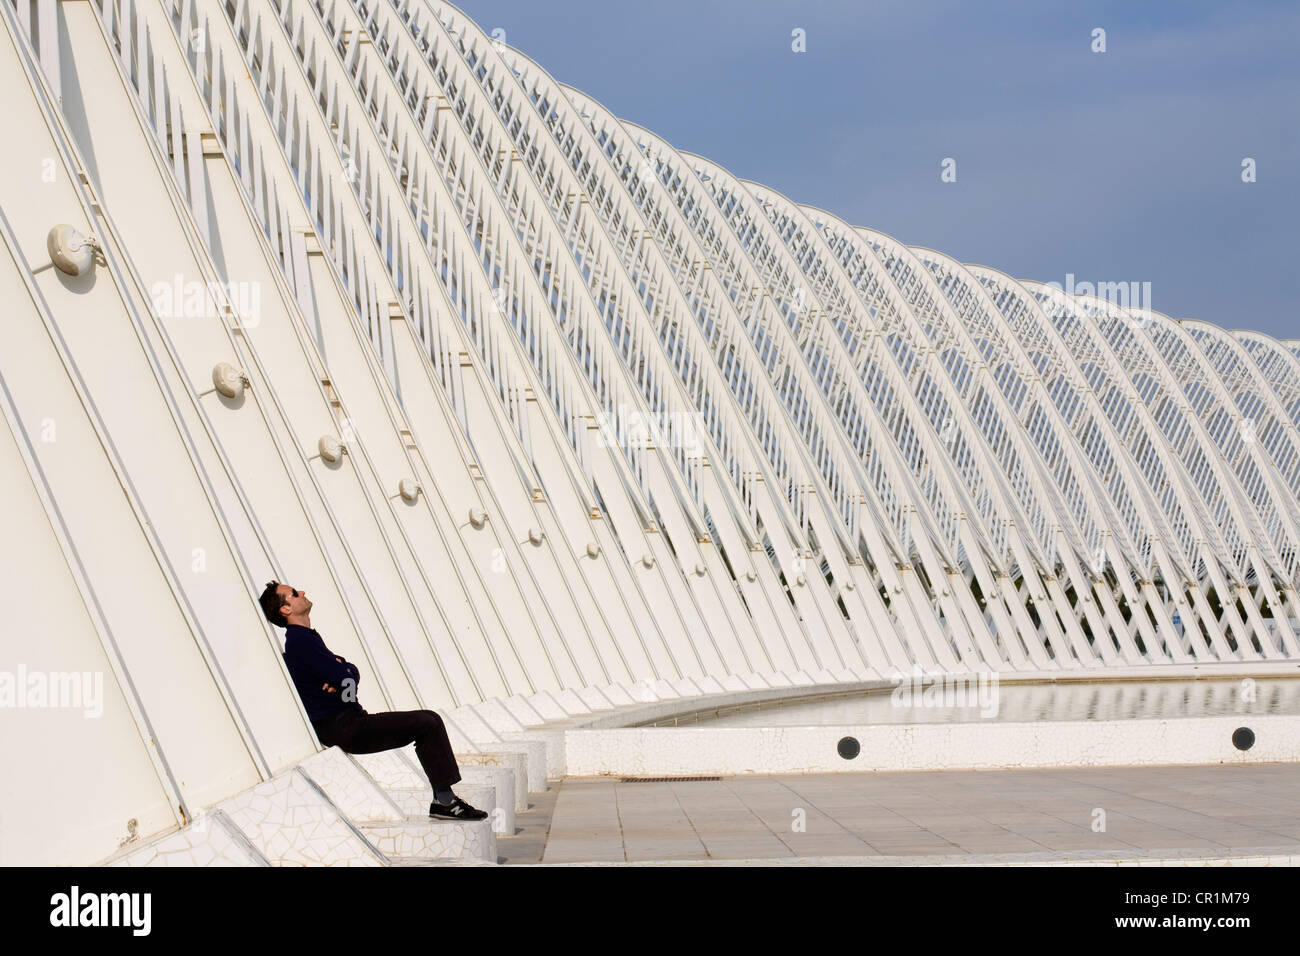 Ática, Grecia, Atenas, Maroussi, OAKA Olympic Stadium construido en 2004 por el arquitecto Santiago Calatrava, el Ágora Foto de stock